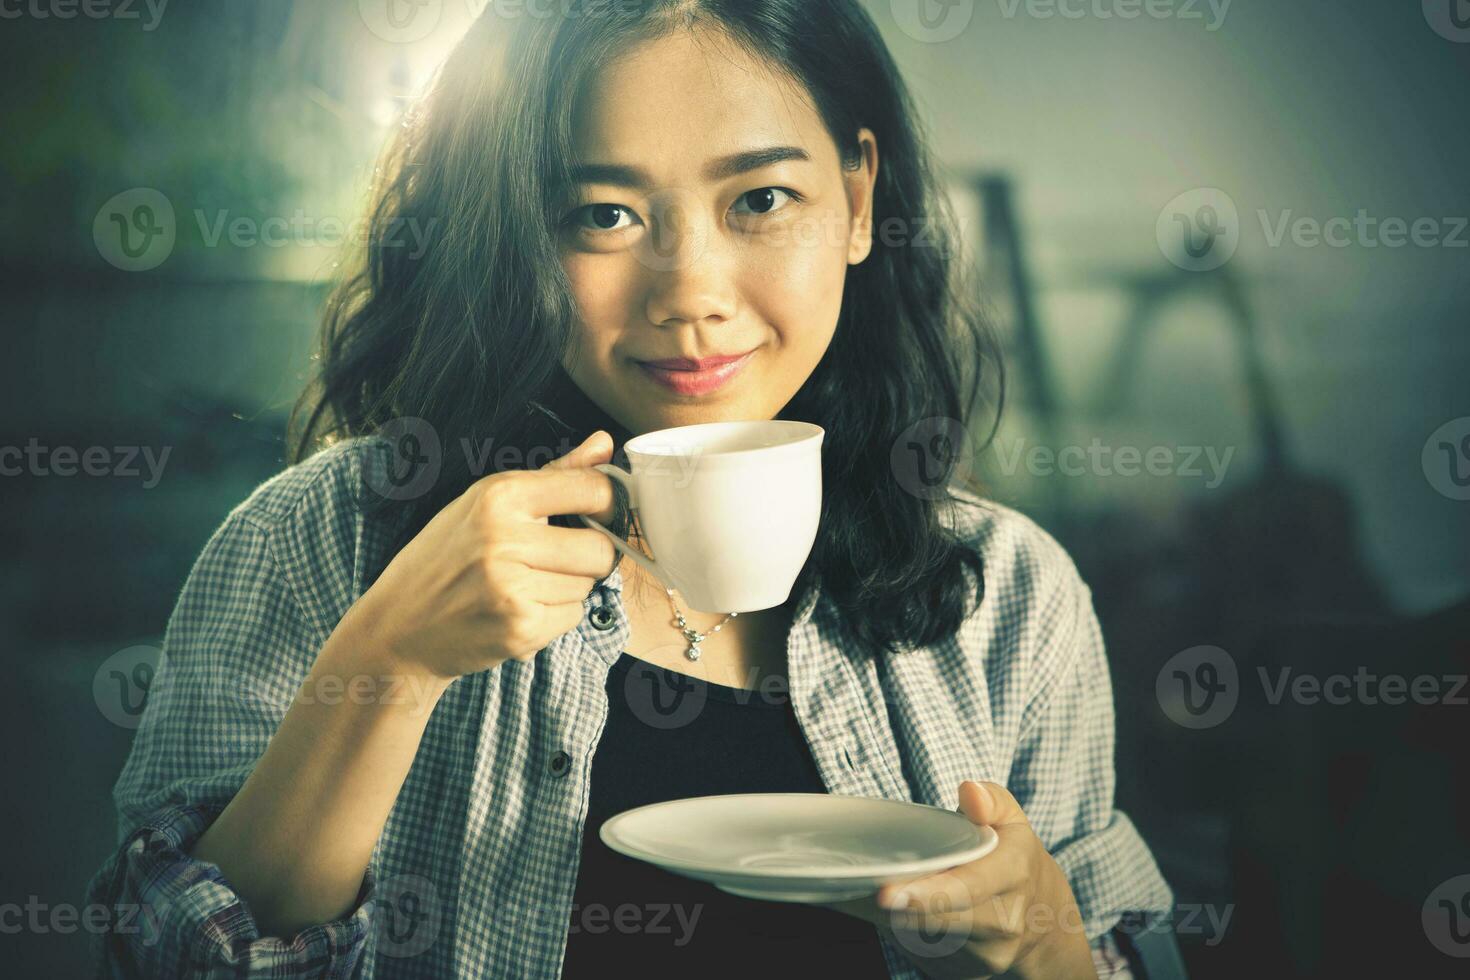 proche en haut visage de asiatique femme avec chaud café tasse prêt à boisson dans main cinéma Couleur processus photo